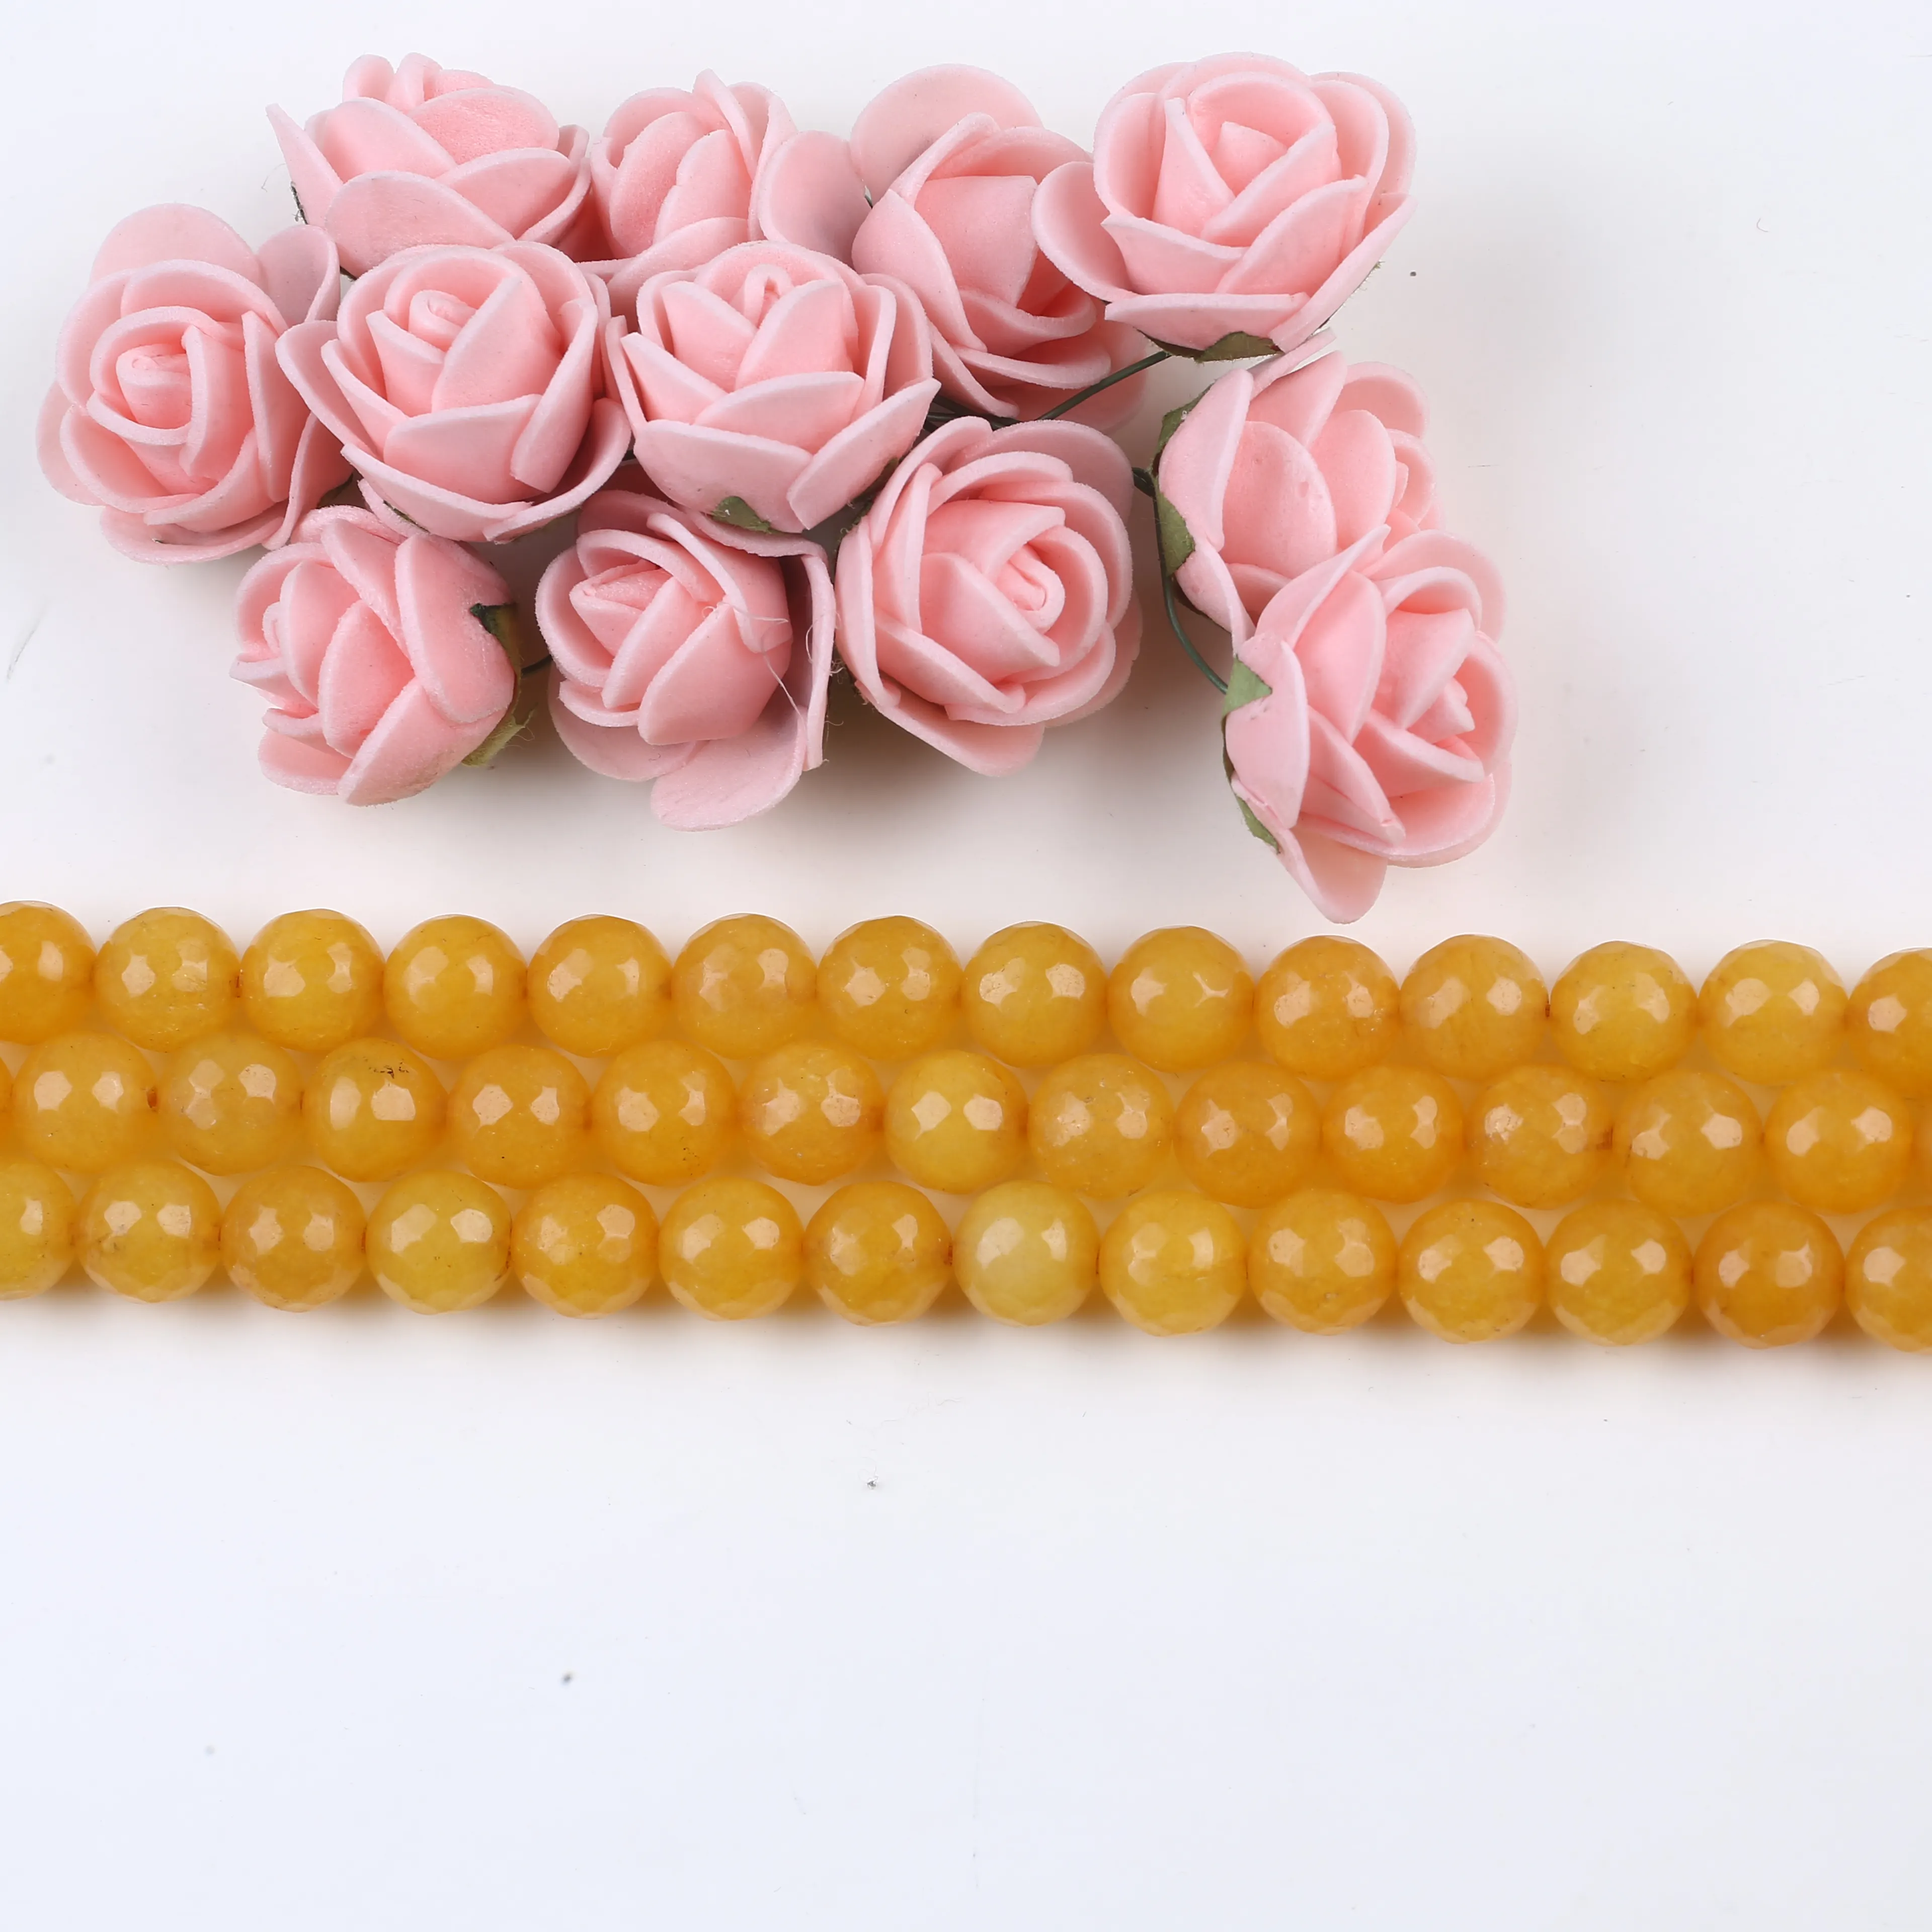 Daking nuevo estilo Natural de piedras preciosas pulsera de perlas de piedra de ágata perlas para joyería